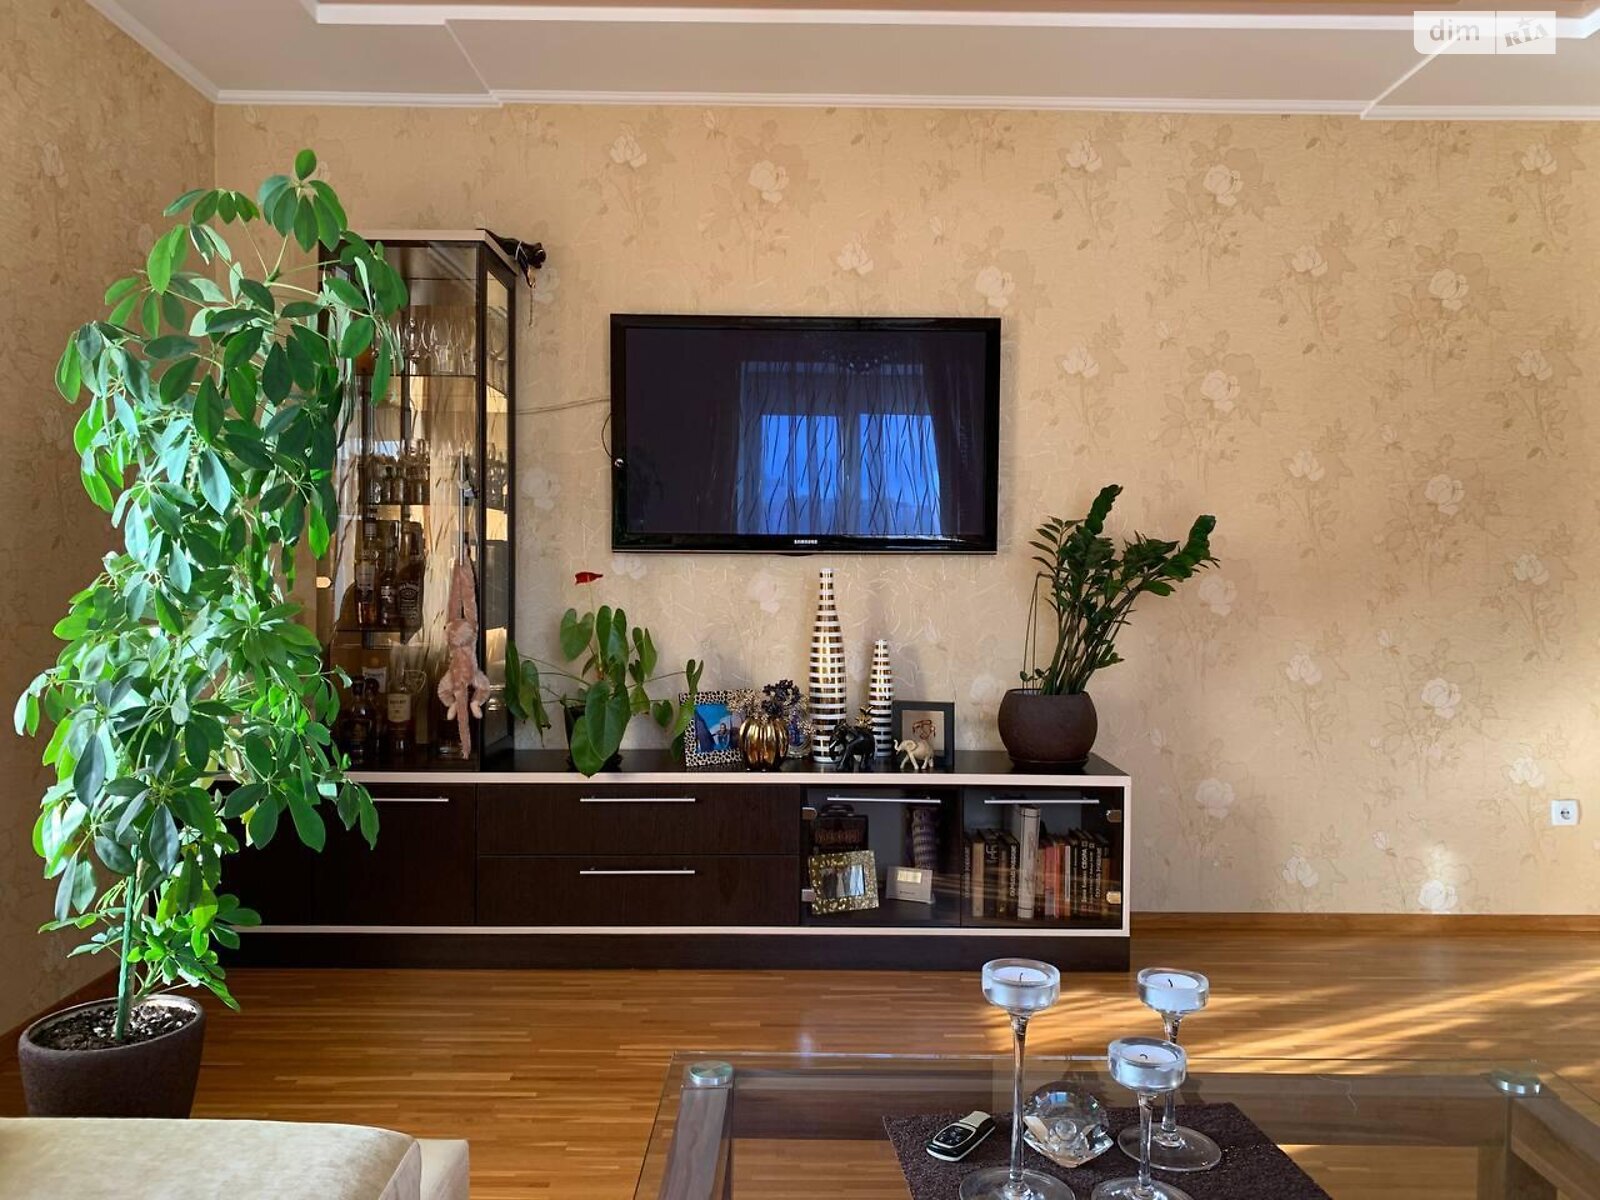 Продажа двухкомнатной квартиры в Хмельницком, на шоссе Старокостянтиновское, район Выставка фото 1